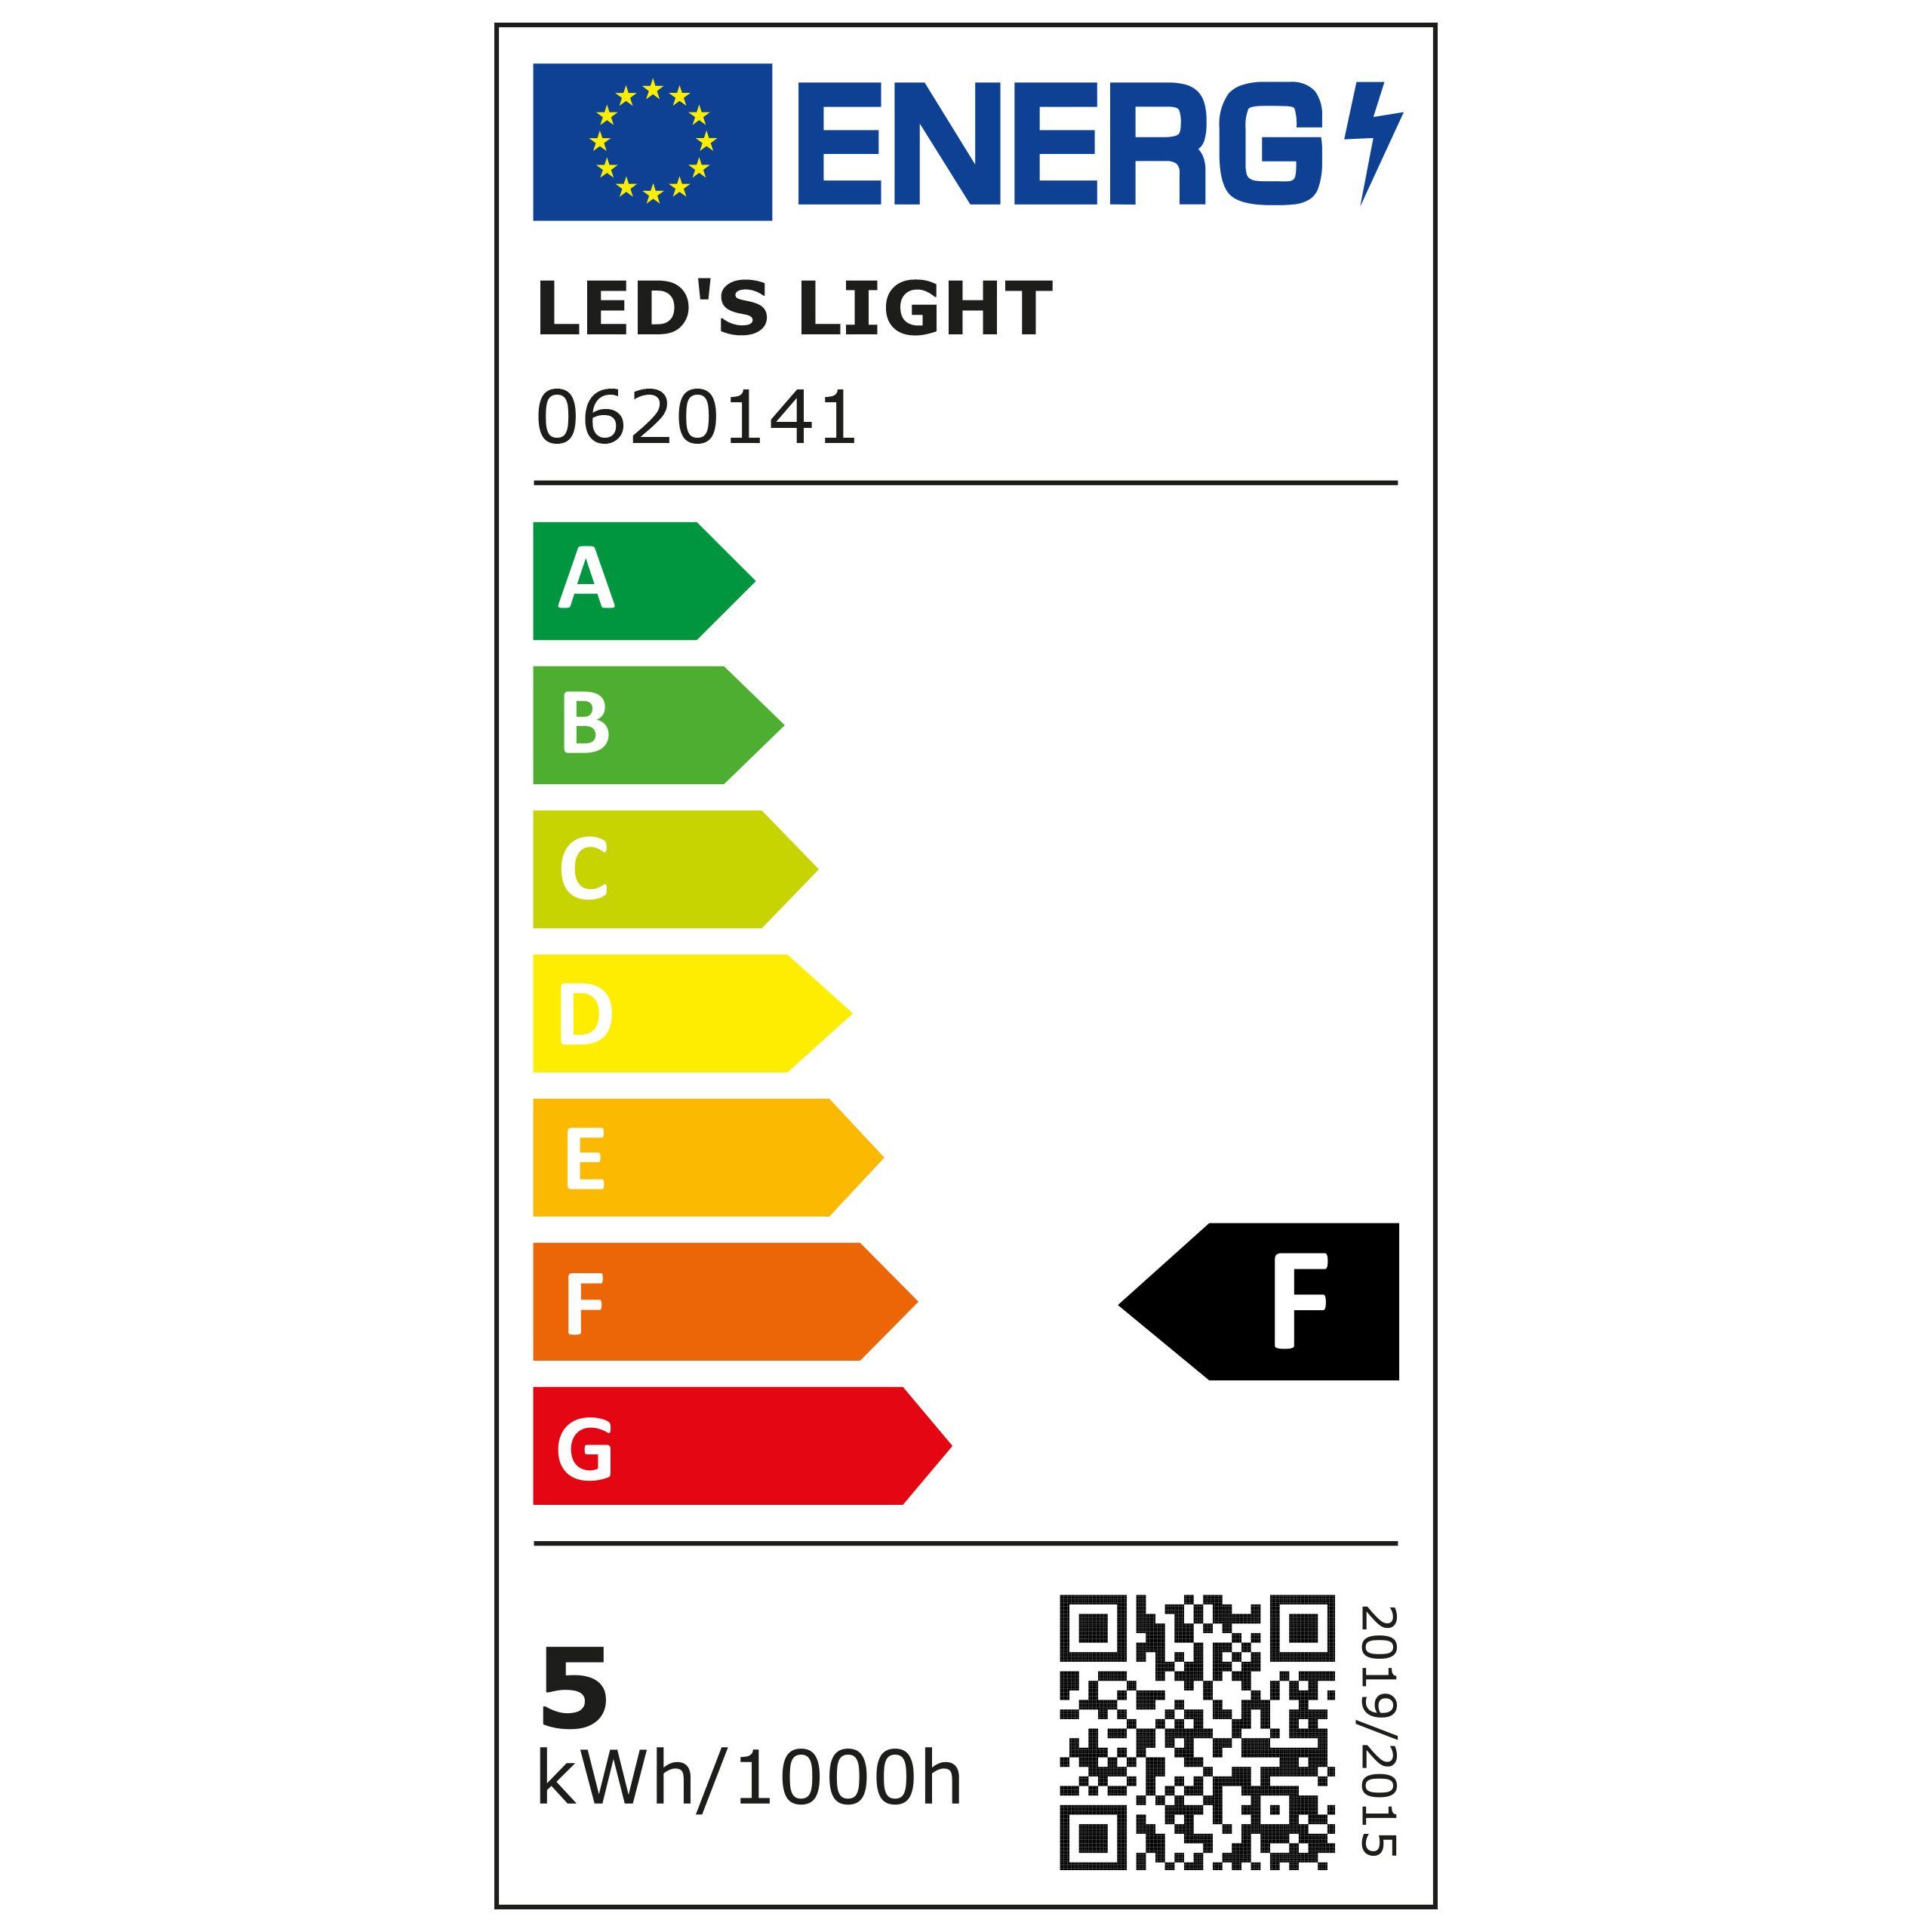 light E27, LED-Leuchtmittel E27 Opal warmweiß 4.5W LED Glühbirne, A60 0620141 LED's